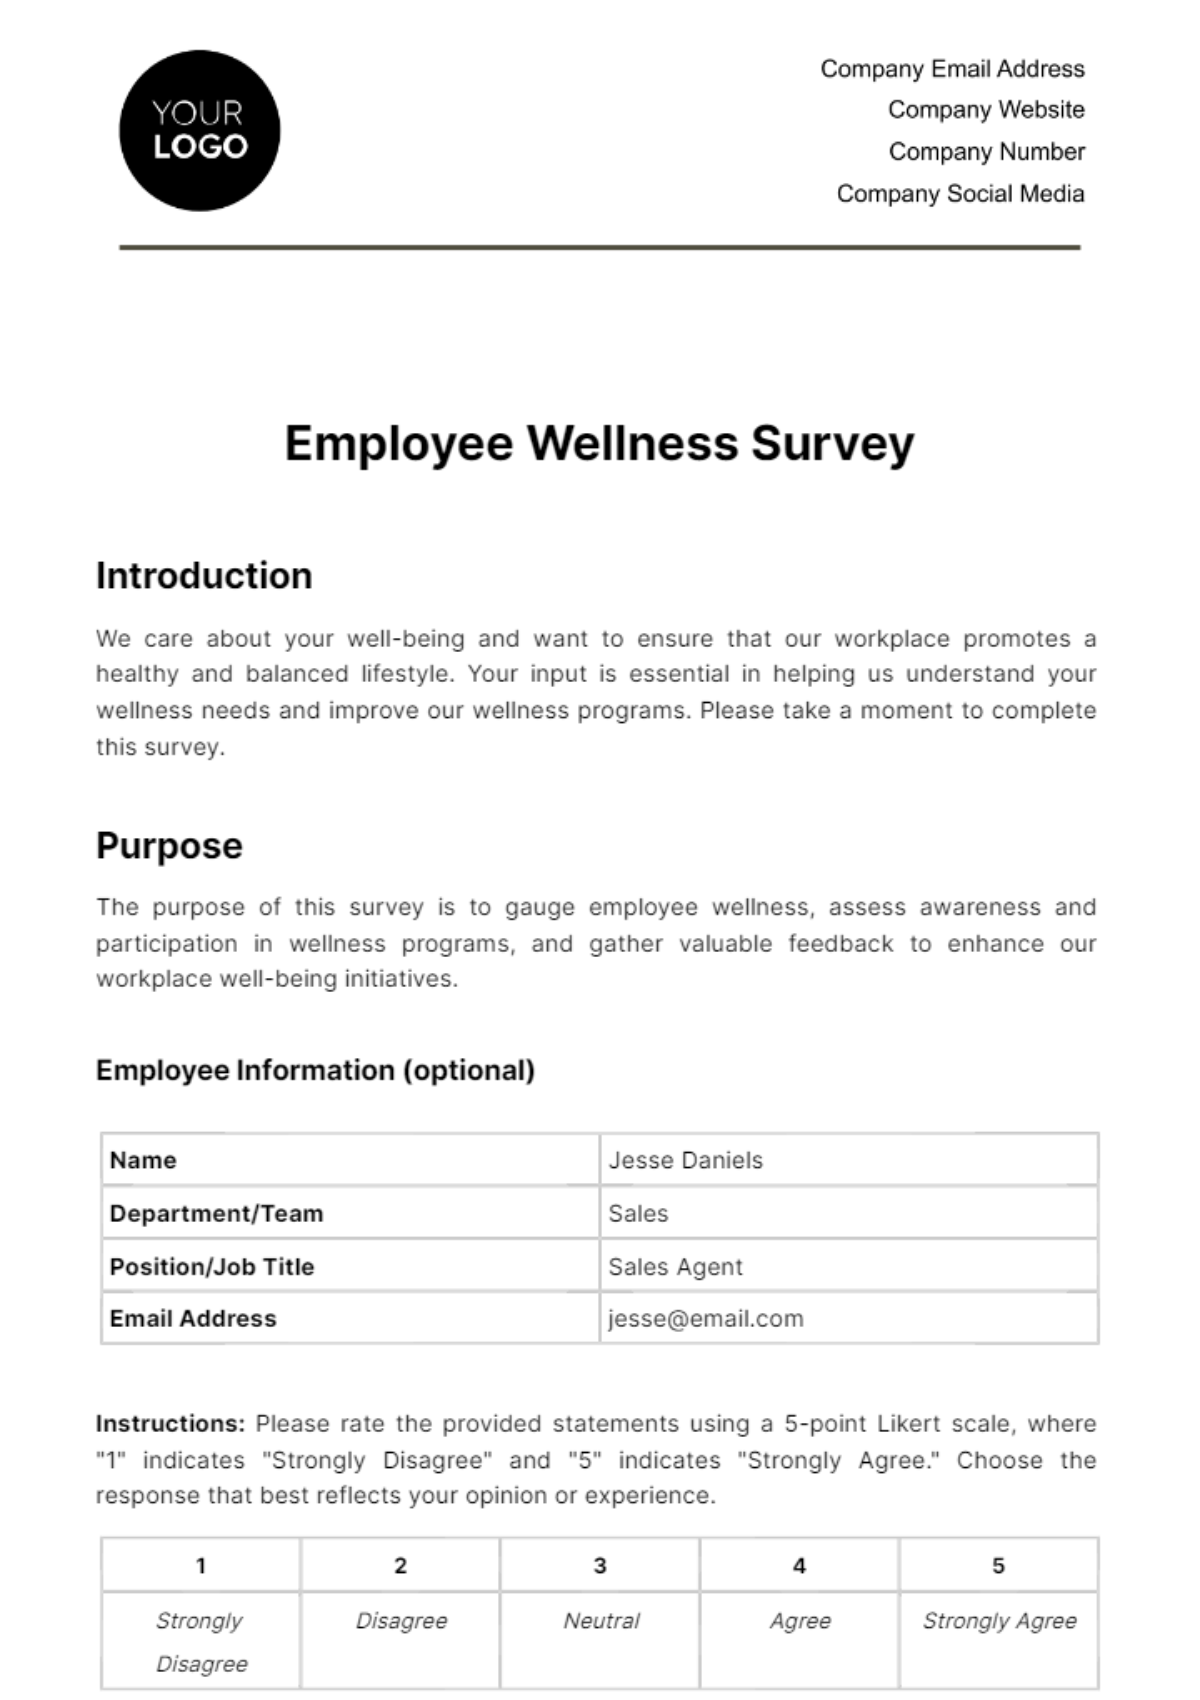 Employee Wellness Survey HR Template